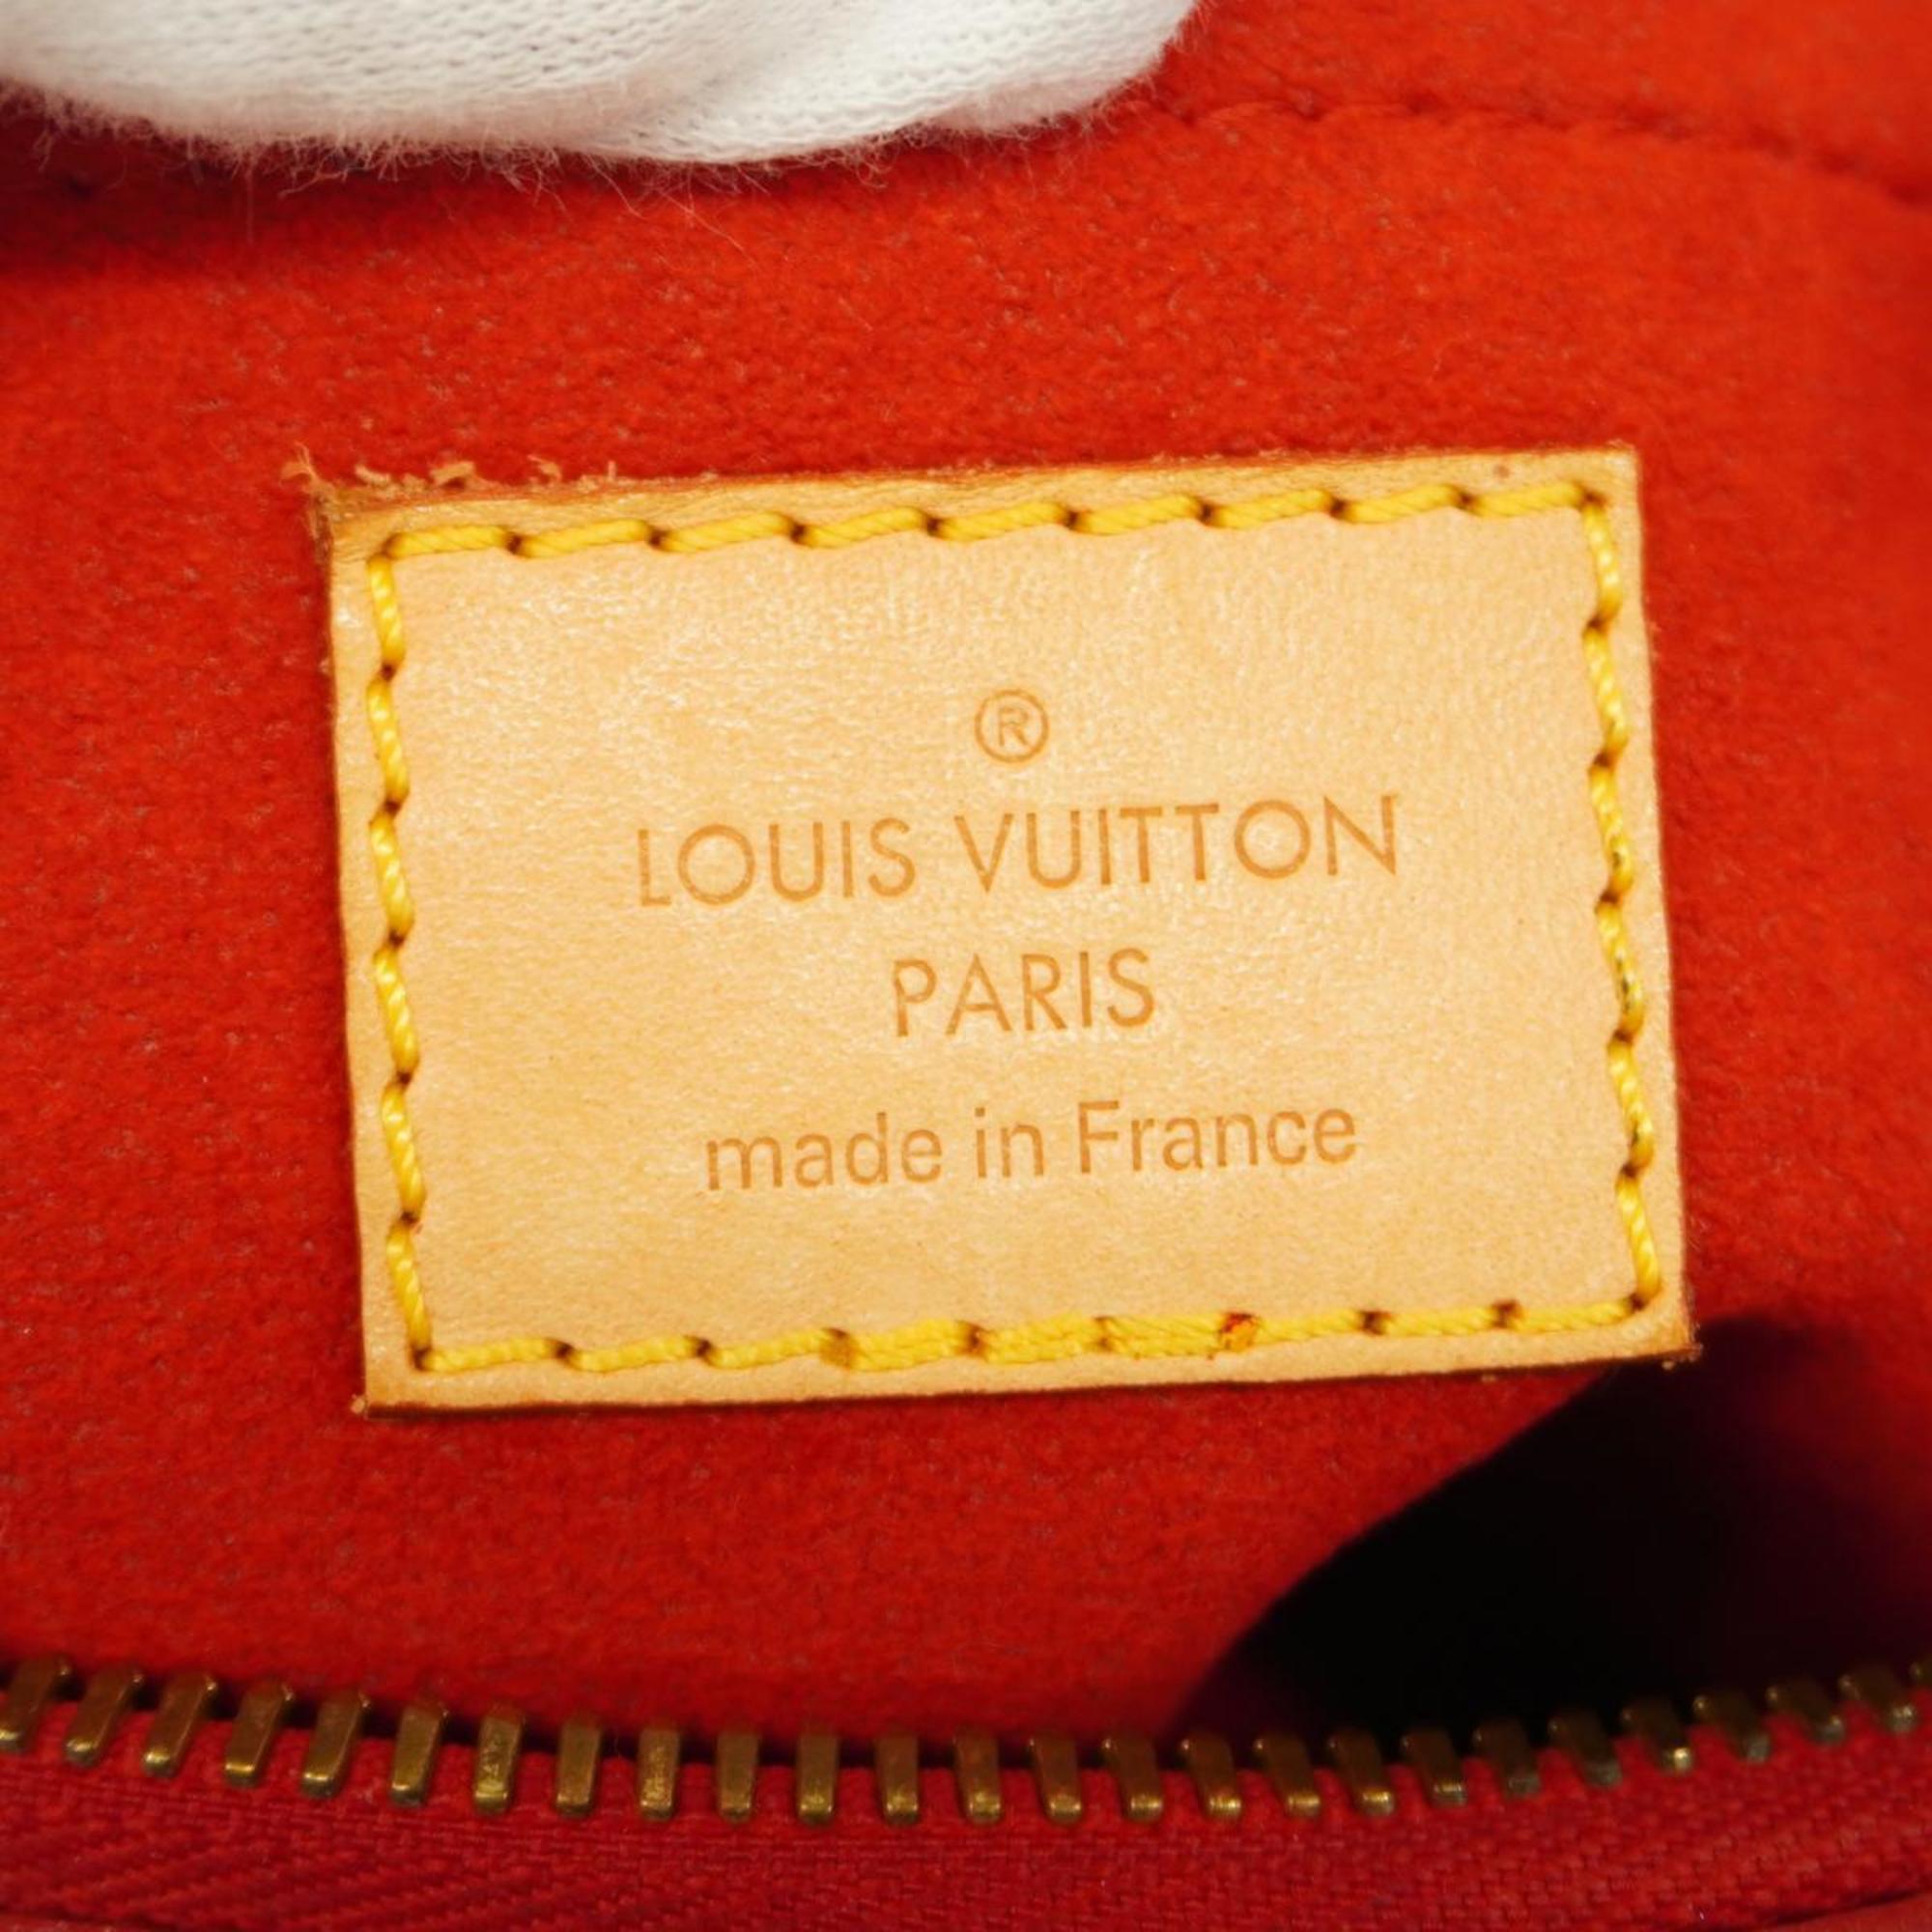 ルイ・ヴィトン(Louis Vuitton) ルイ・ヴィトン ハンドバッグ モノグラム パラスBB M41241 スリーズレディース